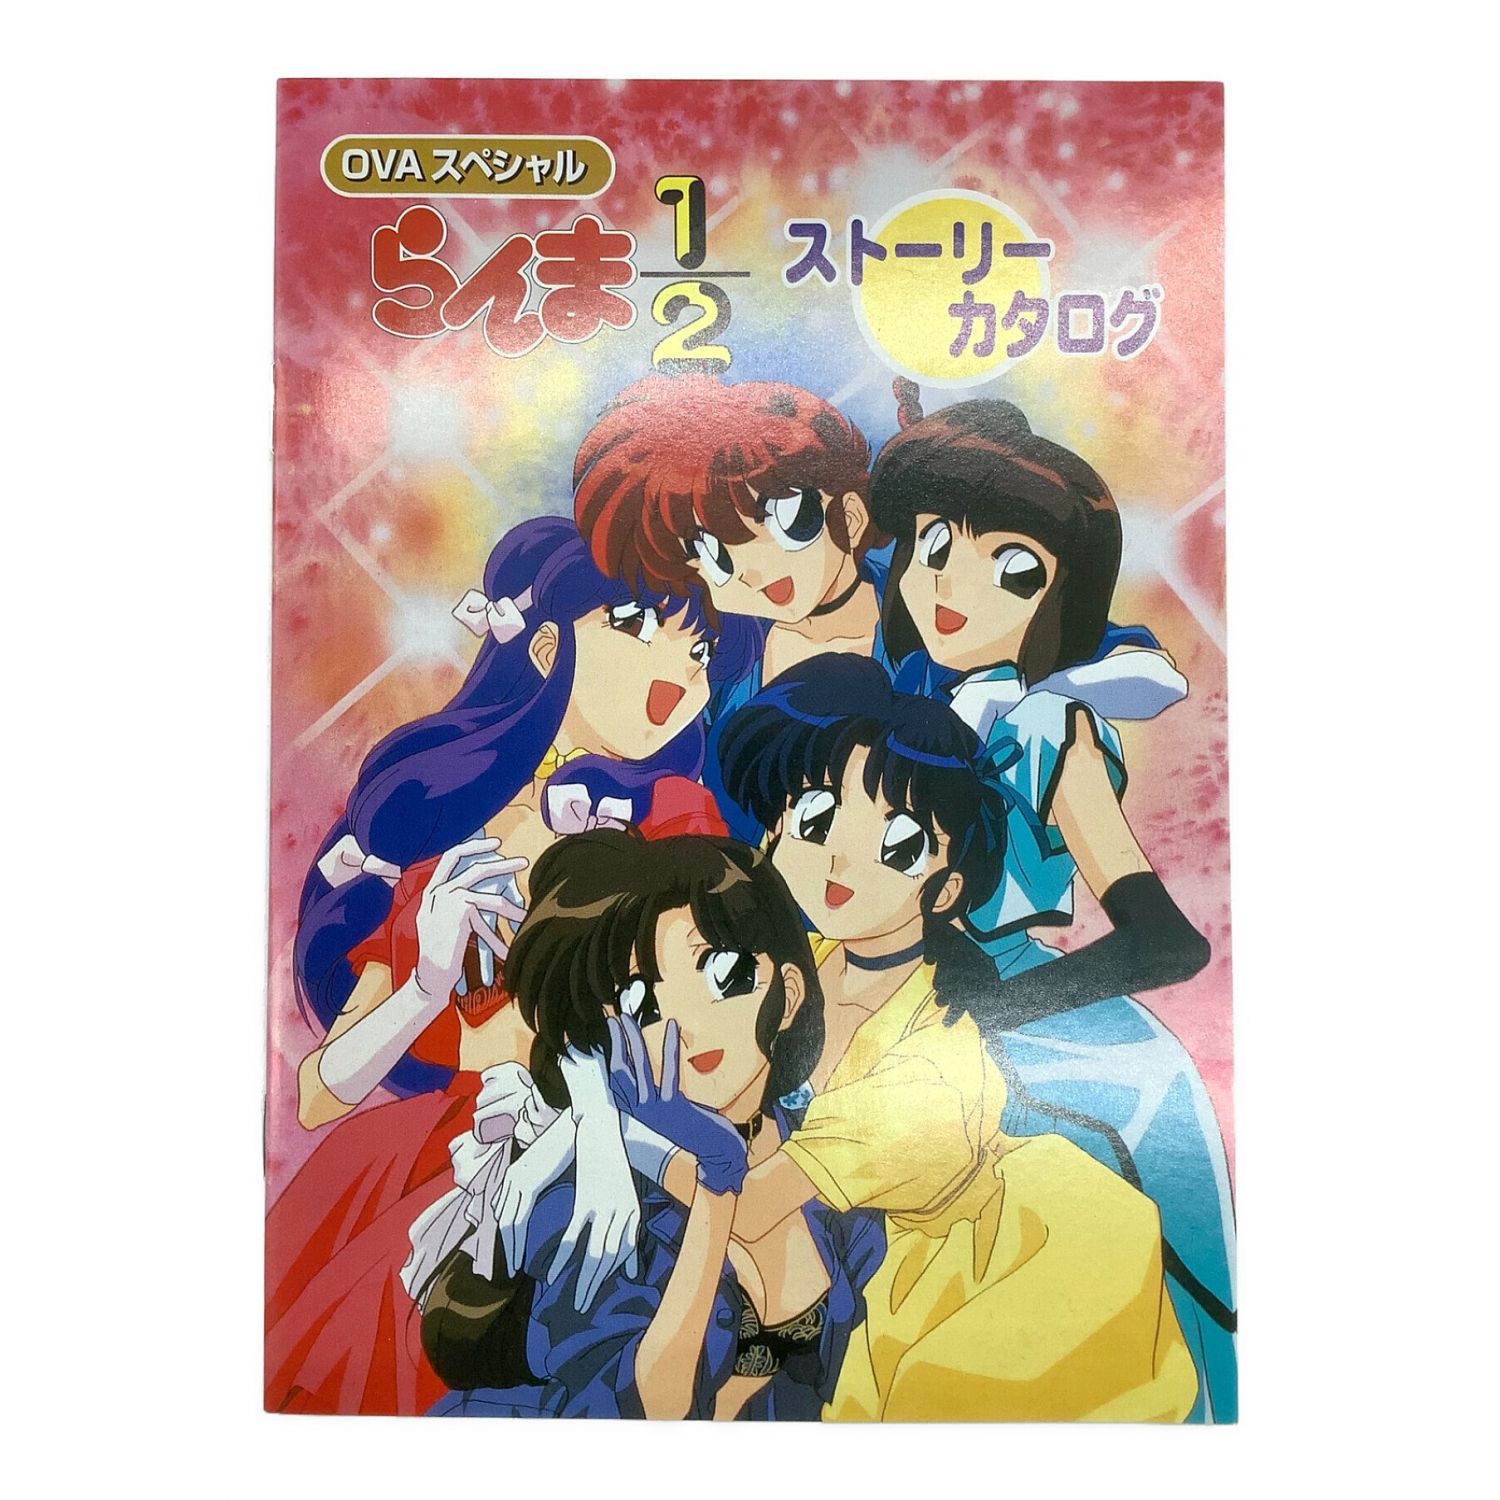 らんま1/2 OVAスペシャルBOX DVD - アニメ